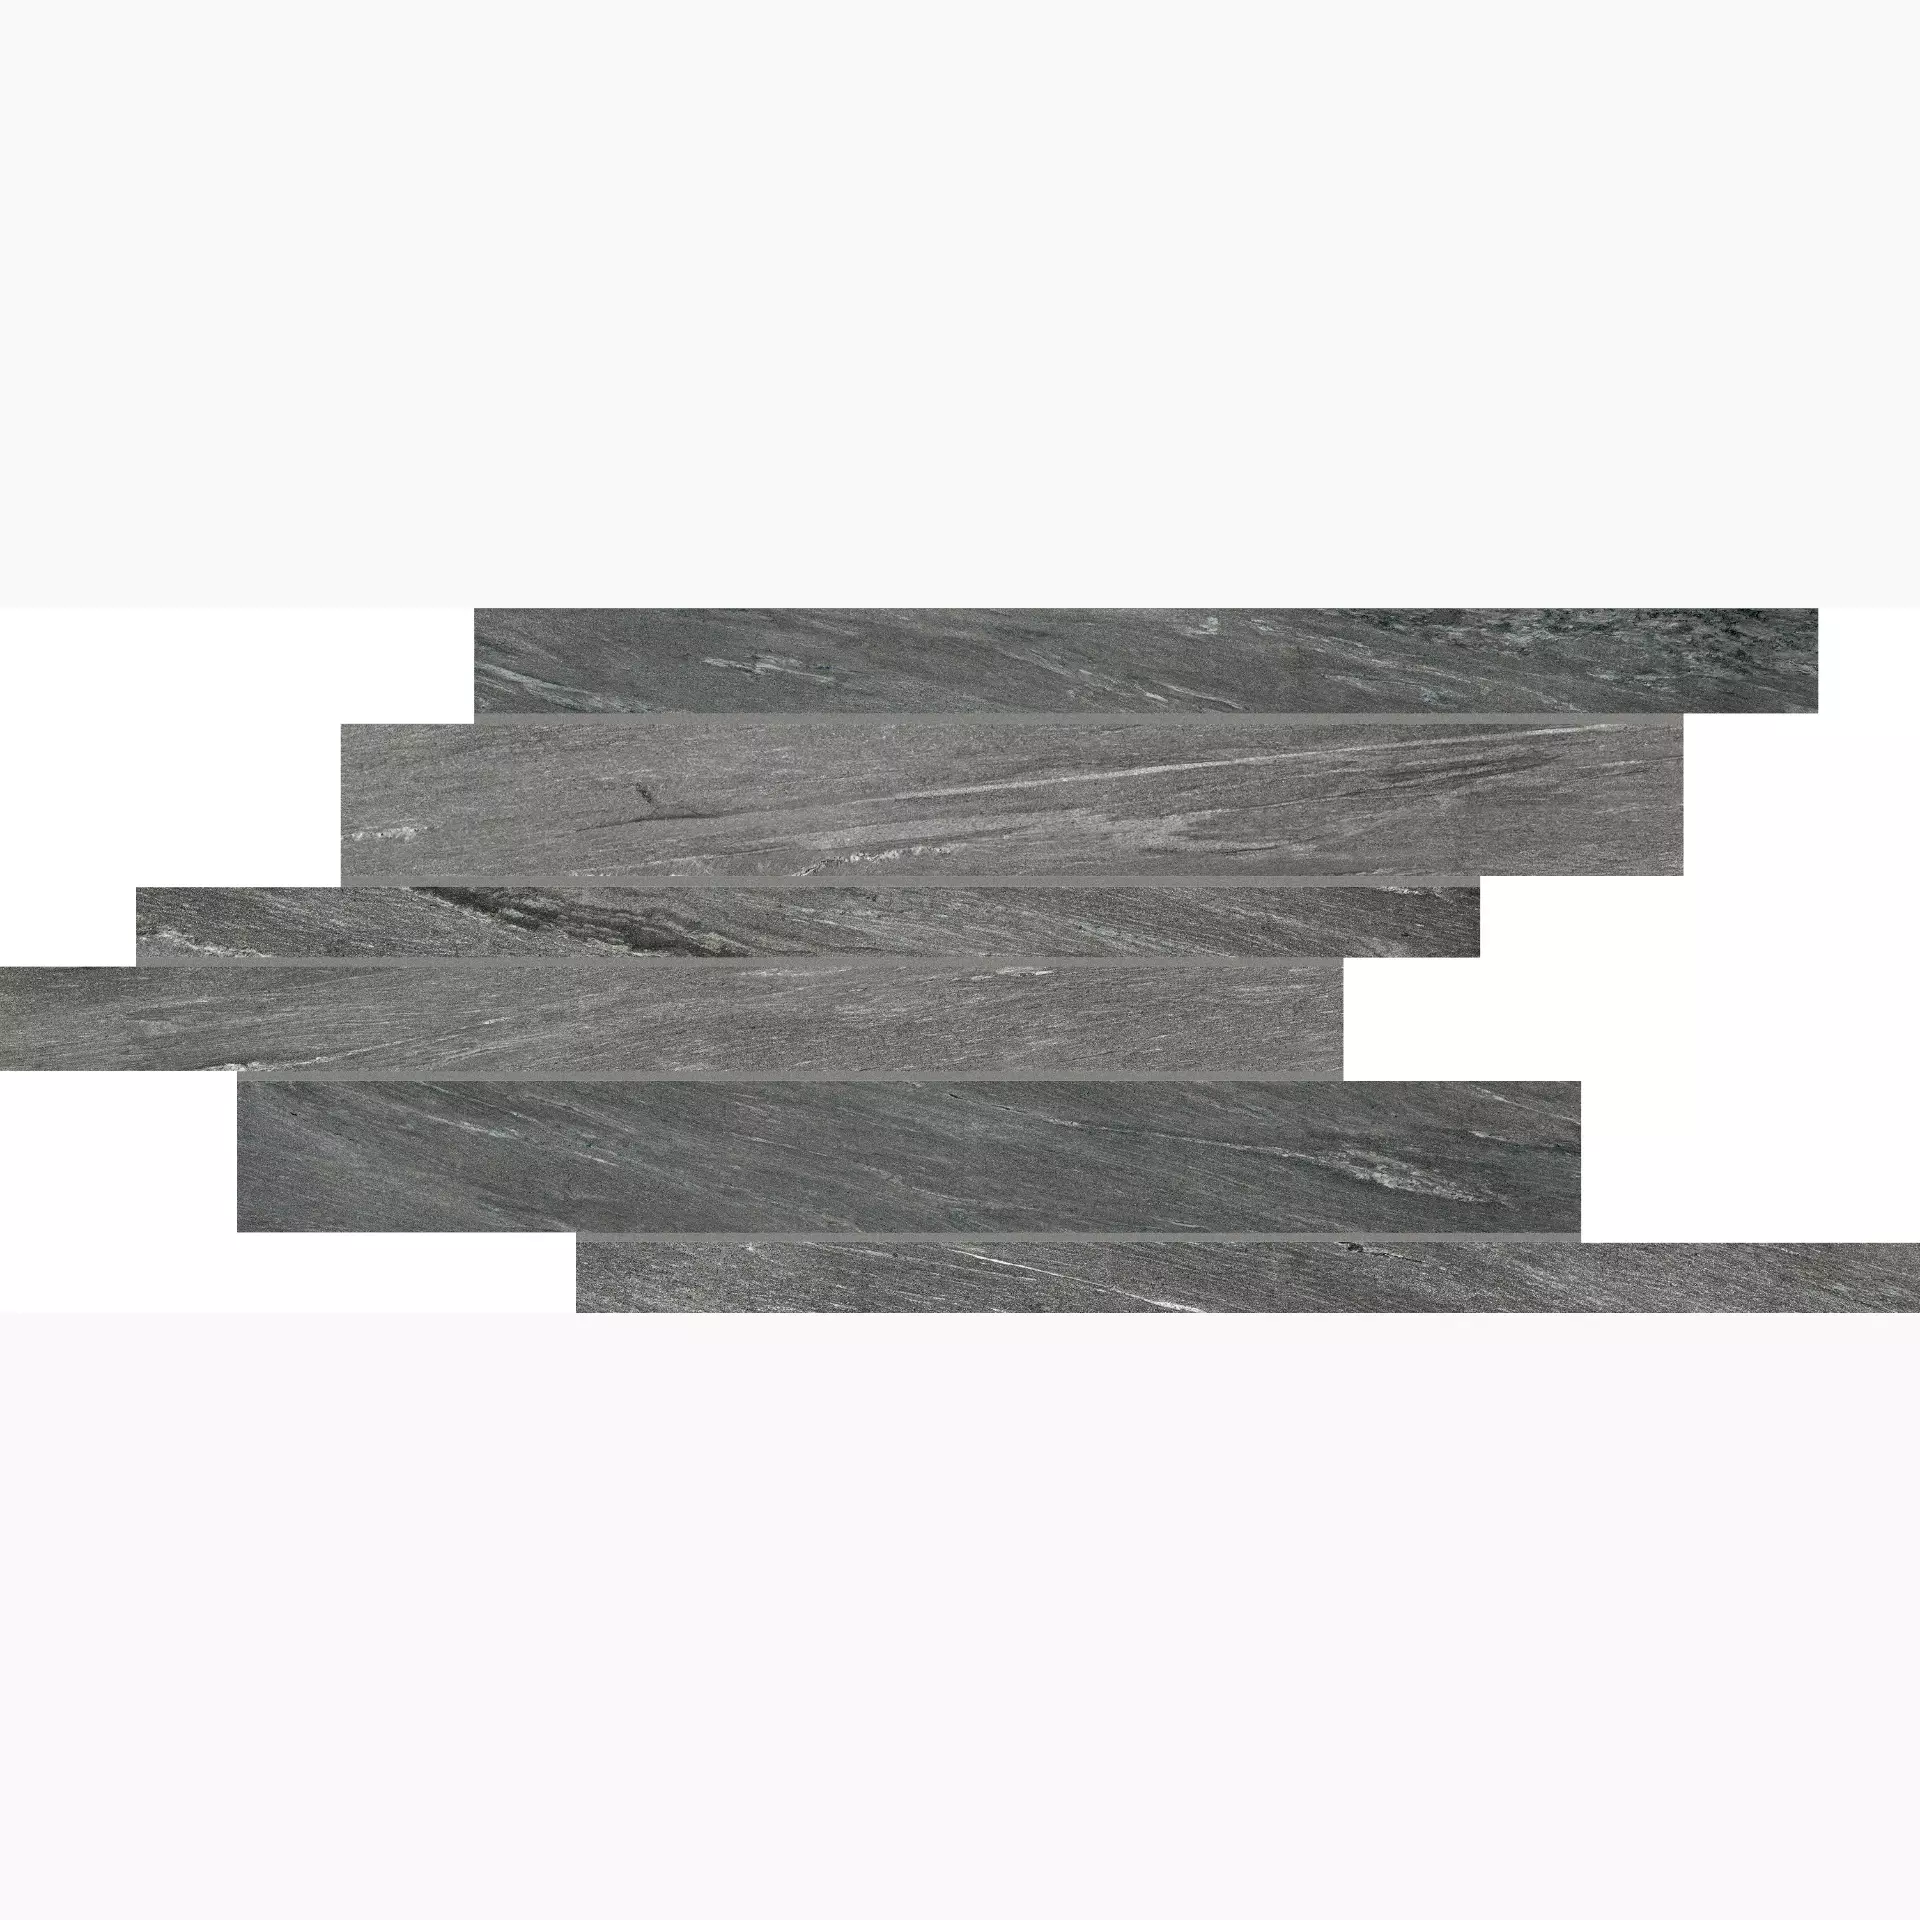 Florim Airtech Basel Grey Naturale – Matt Basel Grey 761033 matt natur 21x21cm Modul Bordüre Sfalsato rektifiziert 9mm